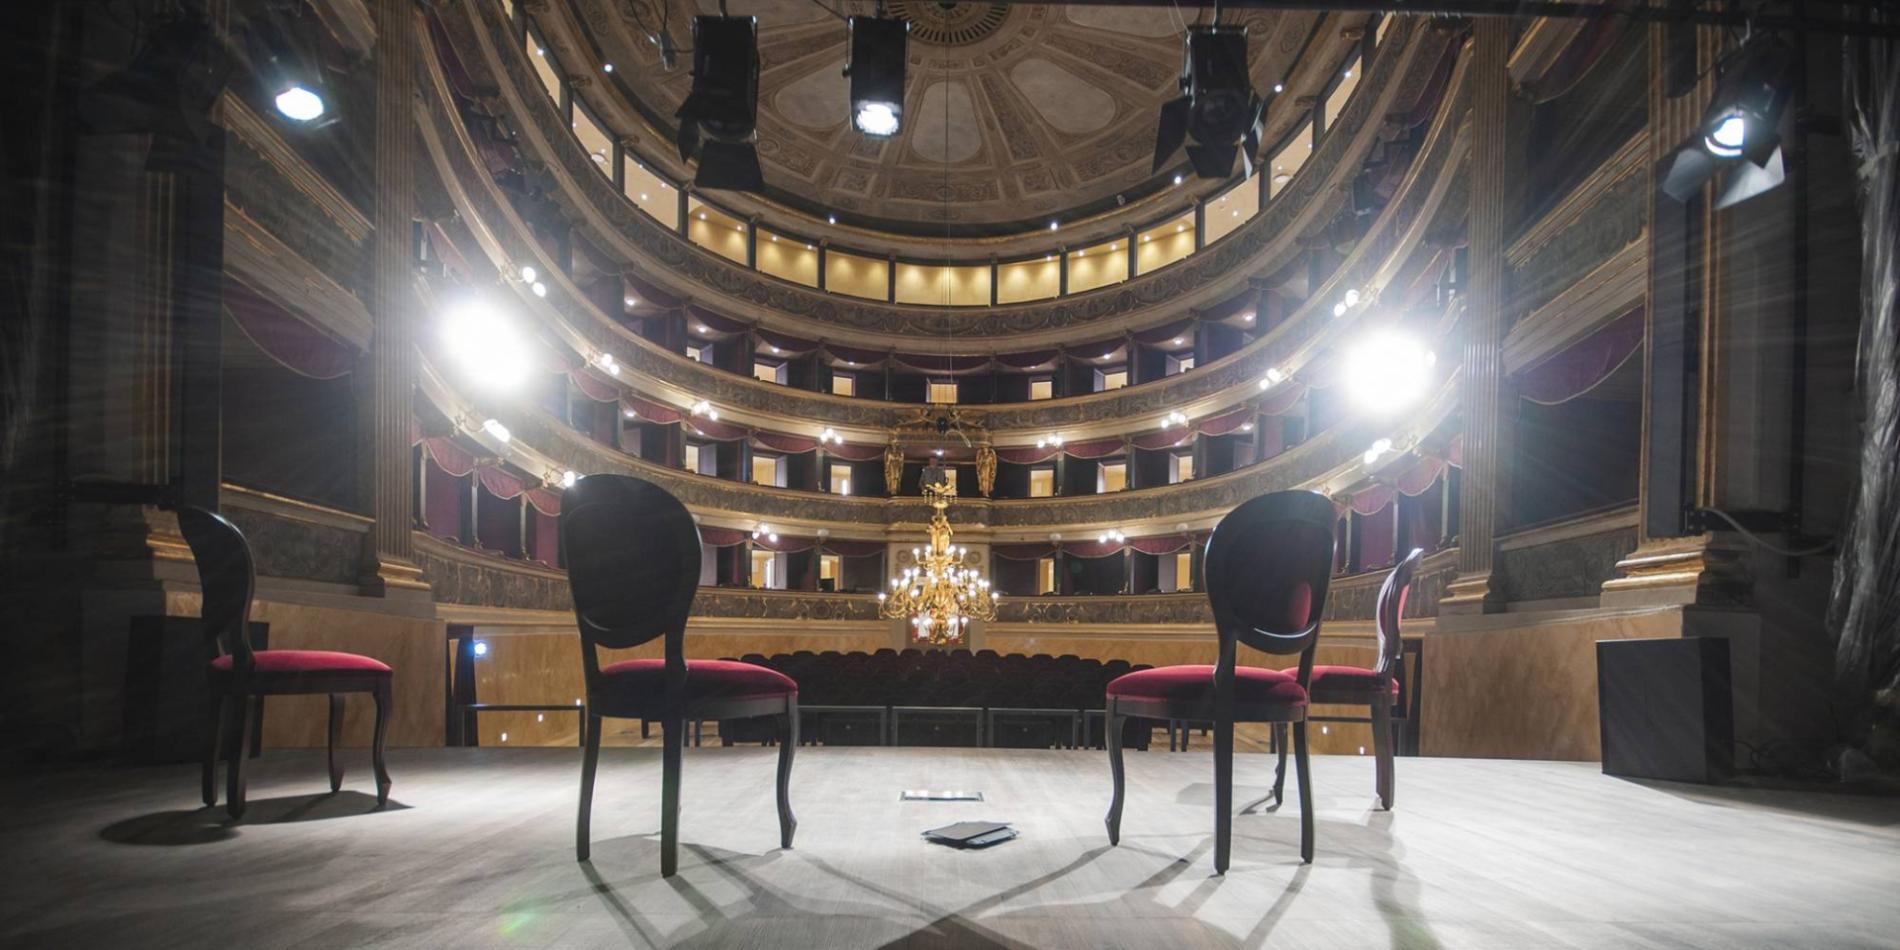 Teatro Marenco, Anna Mazzamauro premiata con il Lavagnino Award